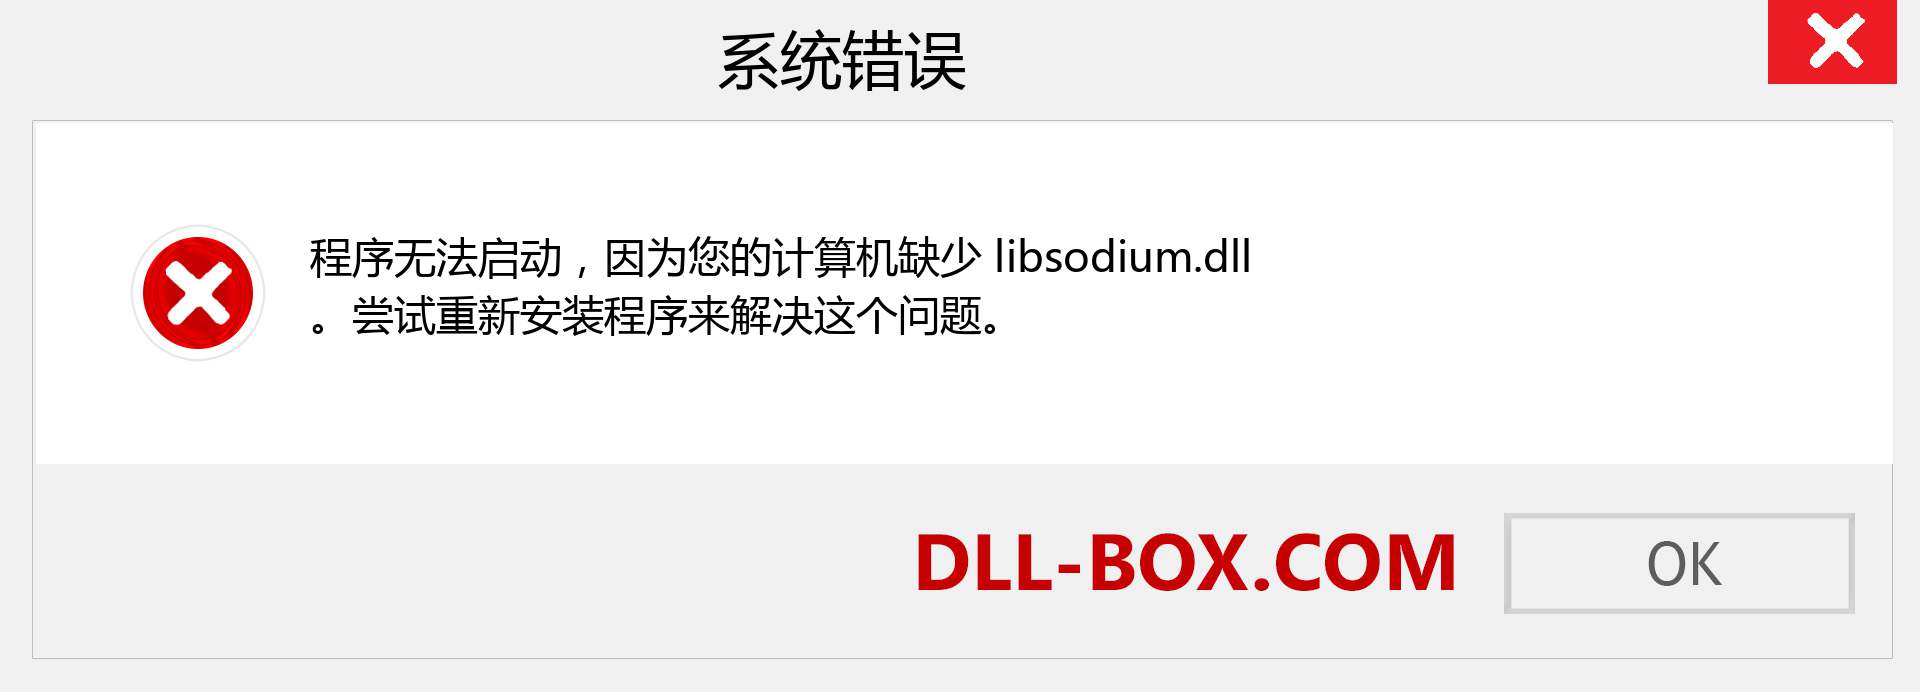 libsodium.dll 文件丢失？。 适用于 Windows 7、8、10 的下载 - 修复 Windows、照片、图像上的 libsodium dll 丢失错误